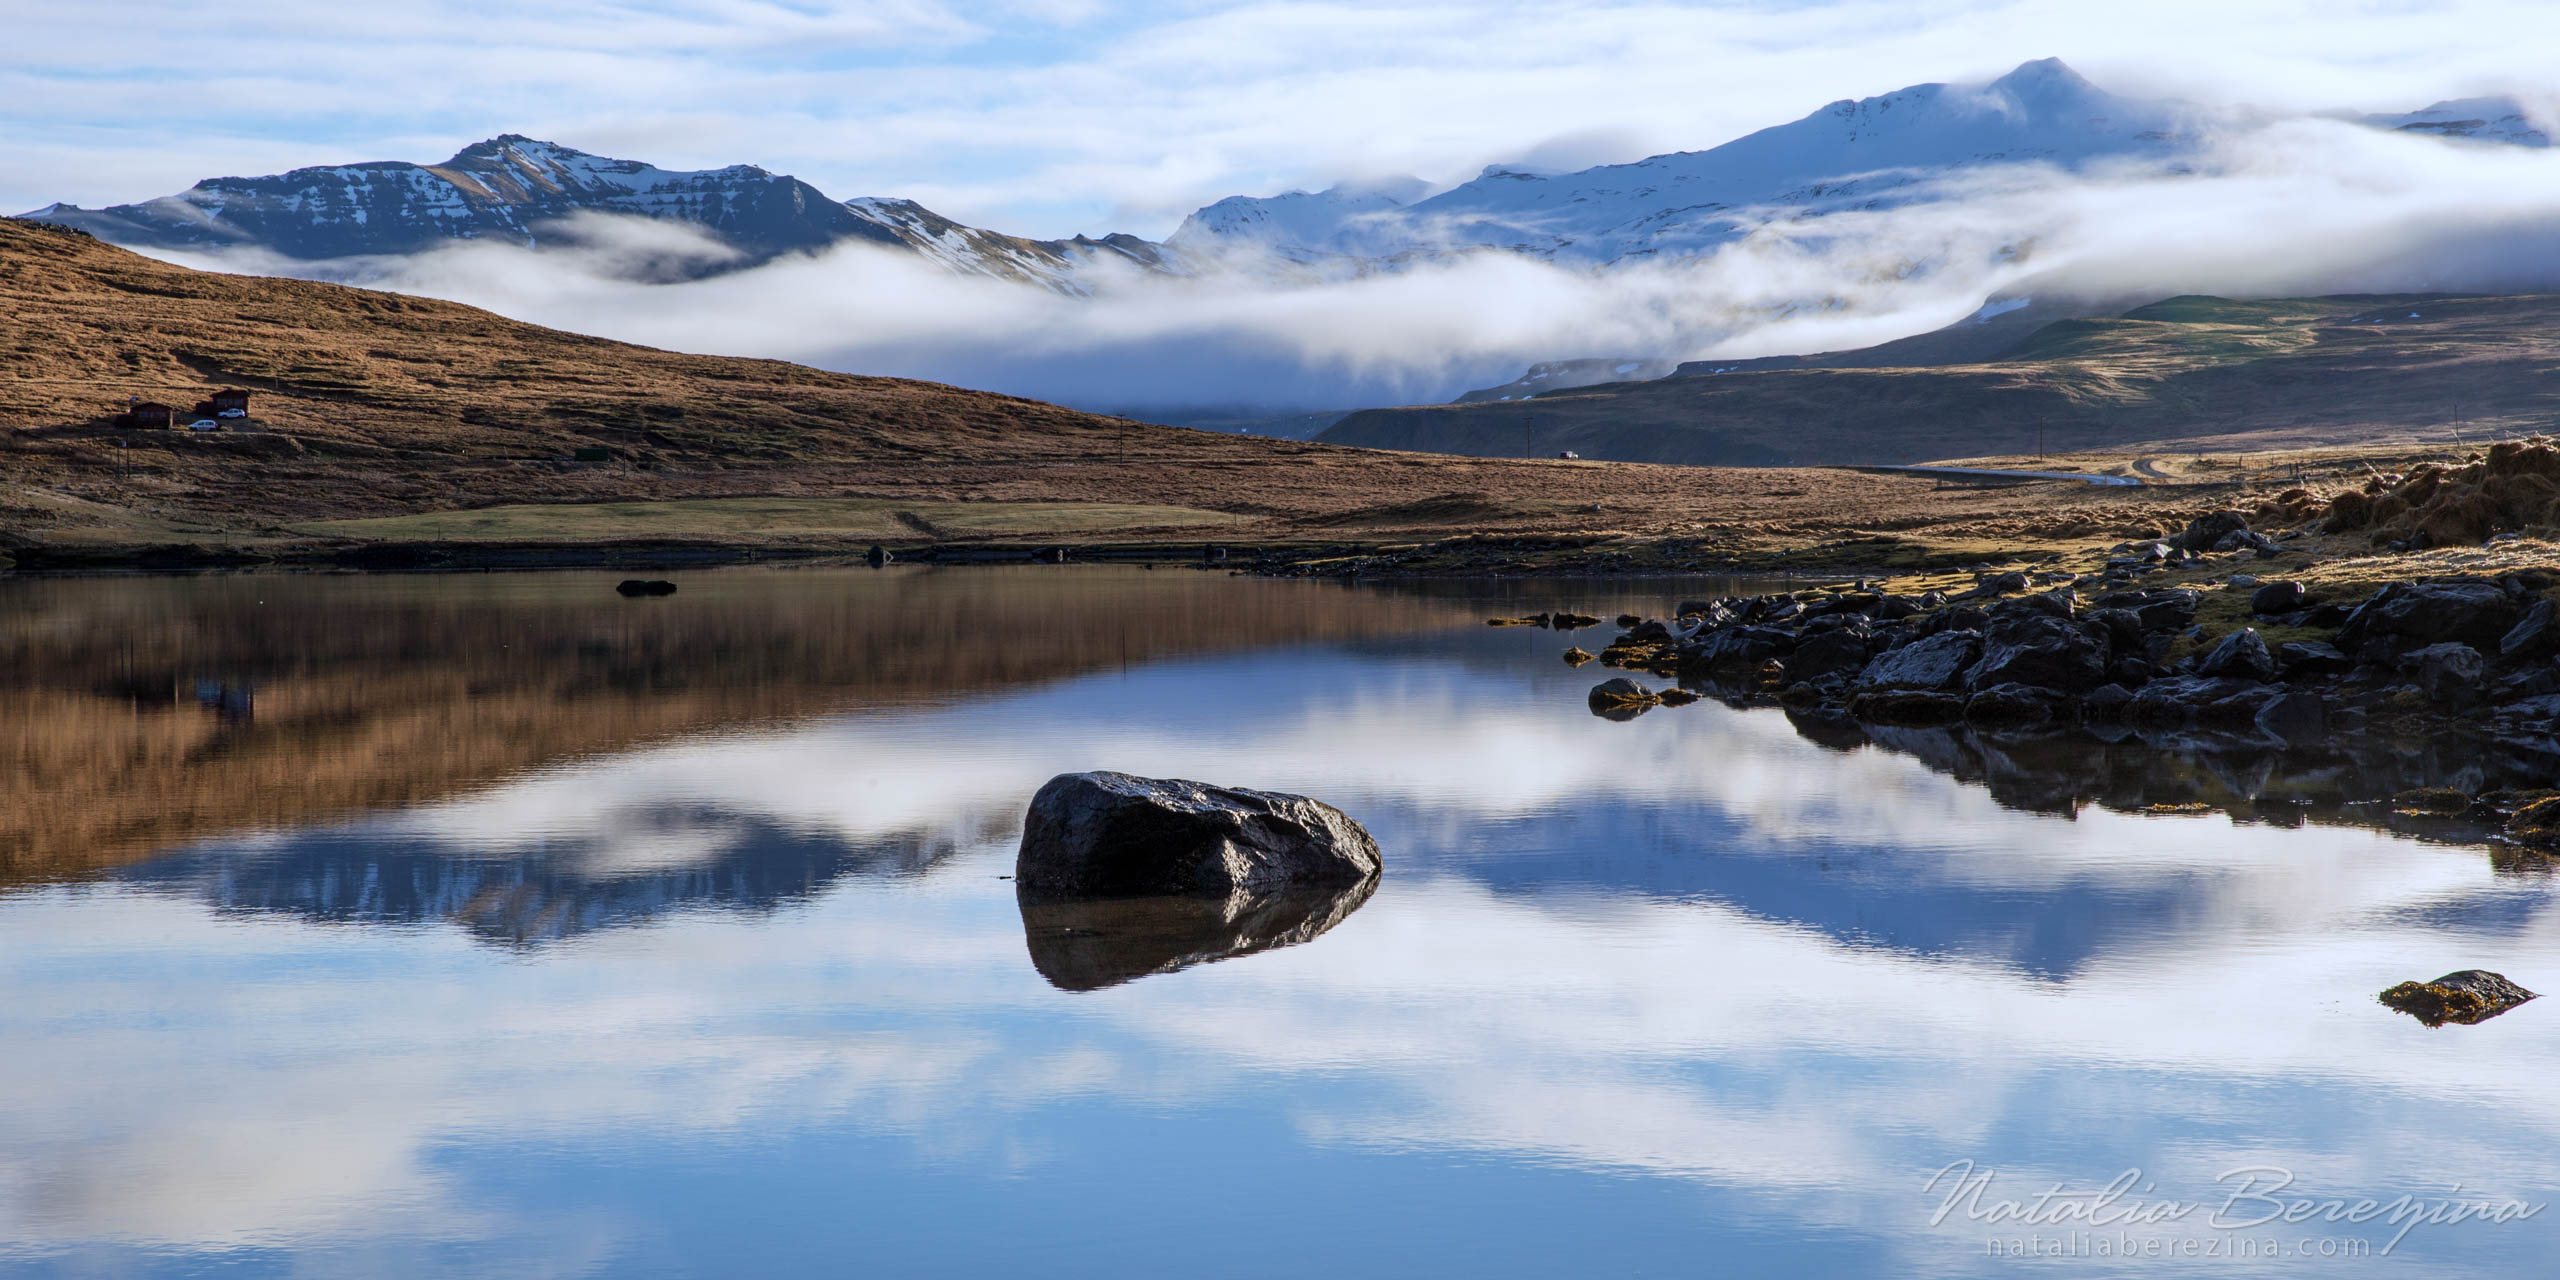 Iceland, landscape, reflection, mountains, stone, cloud, 2x1 IC1-NBDK1U2156-P - Iceland - Natalia Berezina Photography